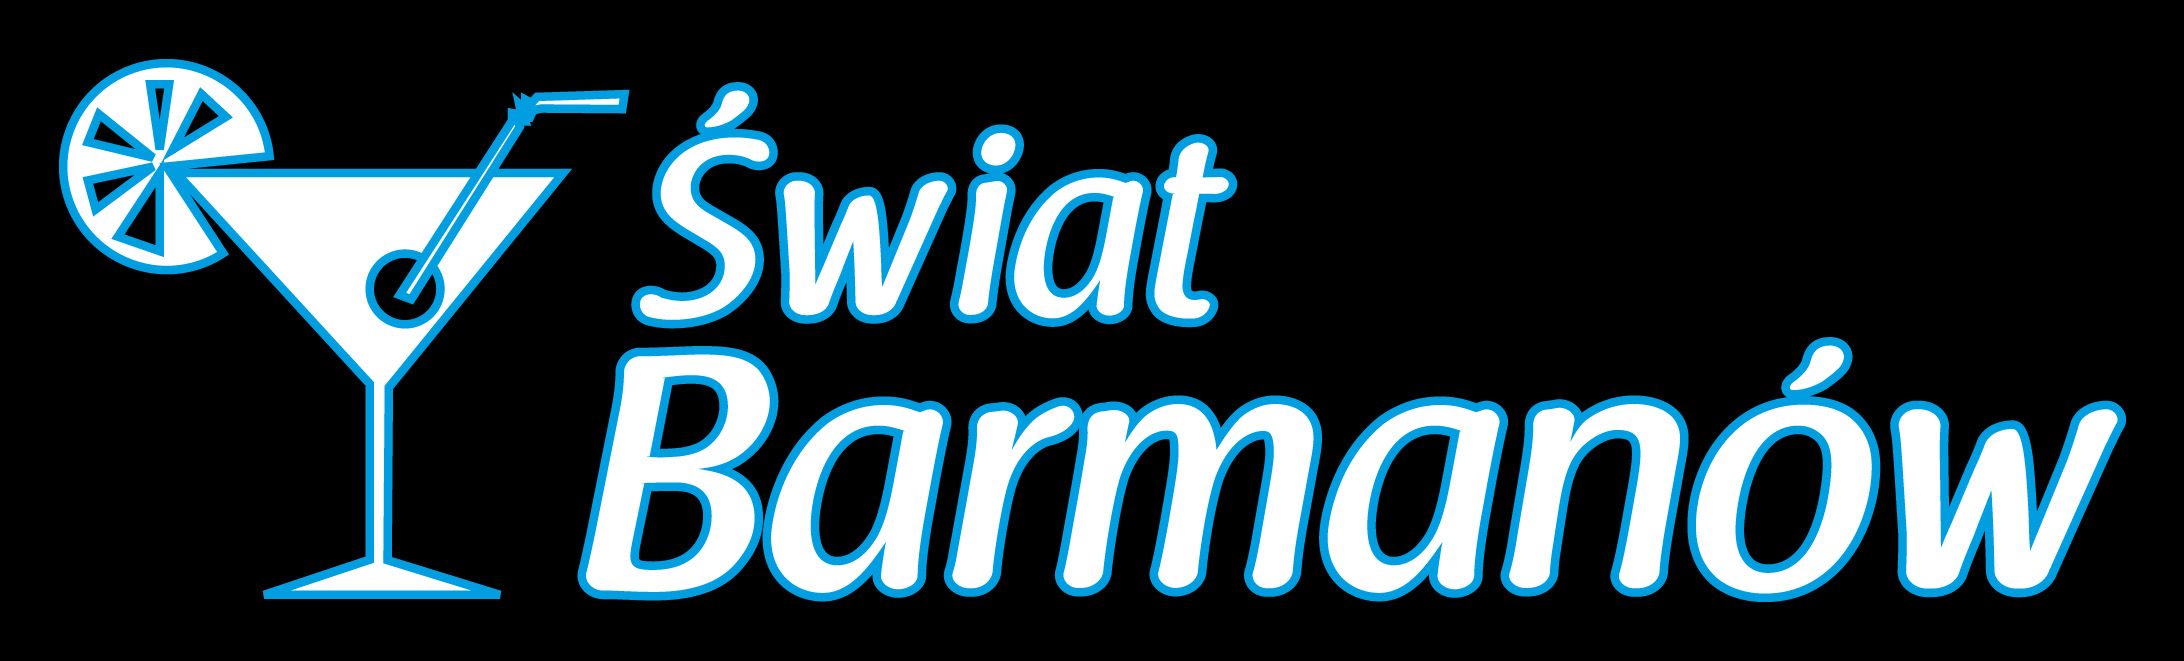 Swiat_Barmanow_logo_RGB